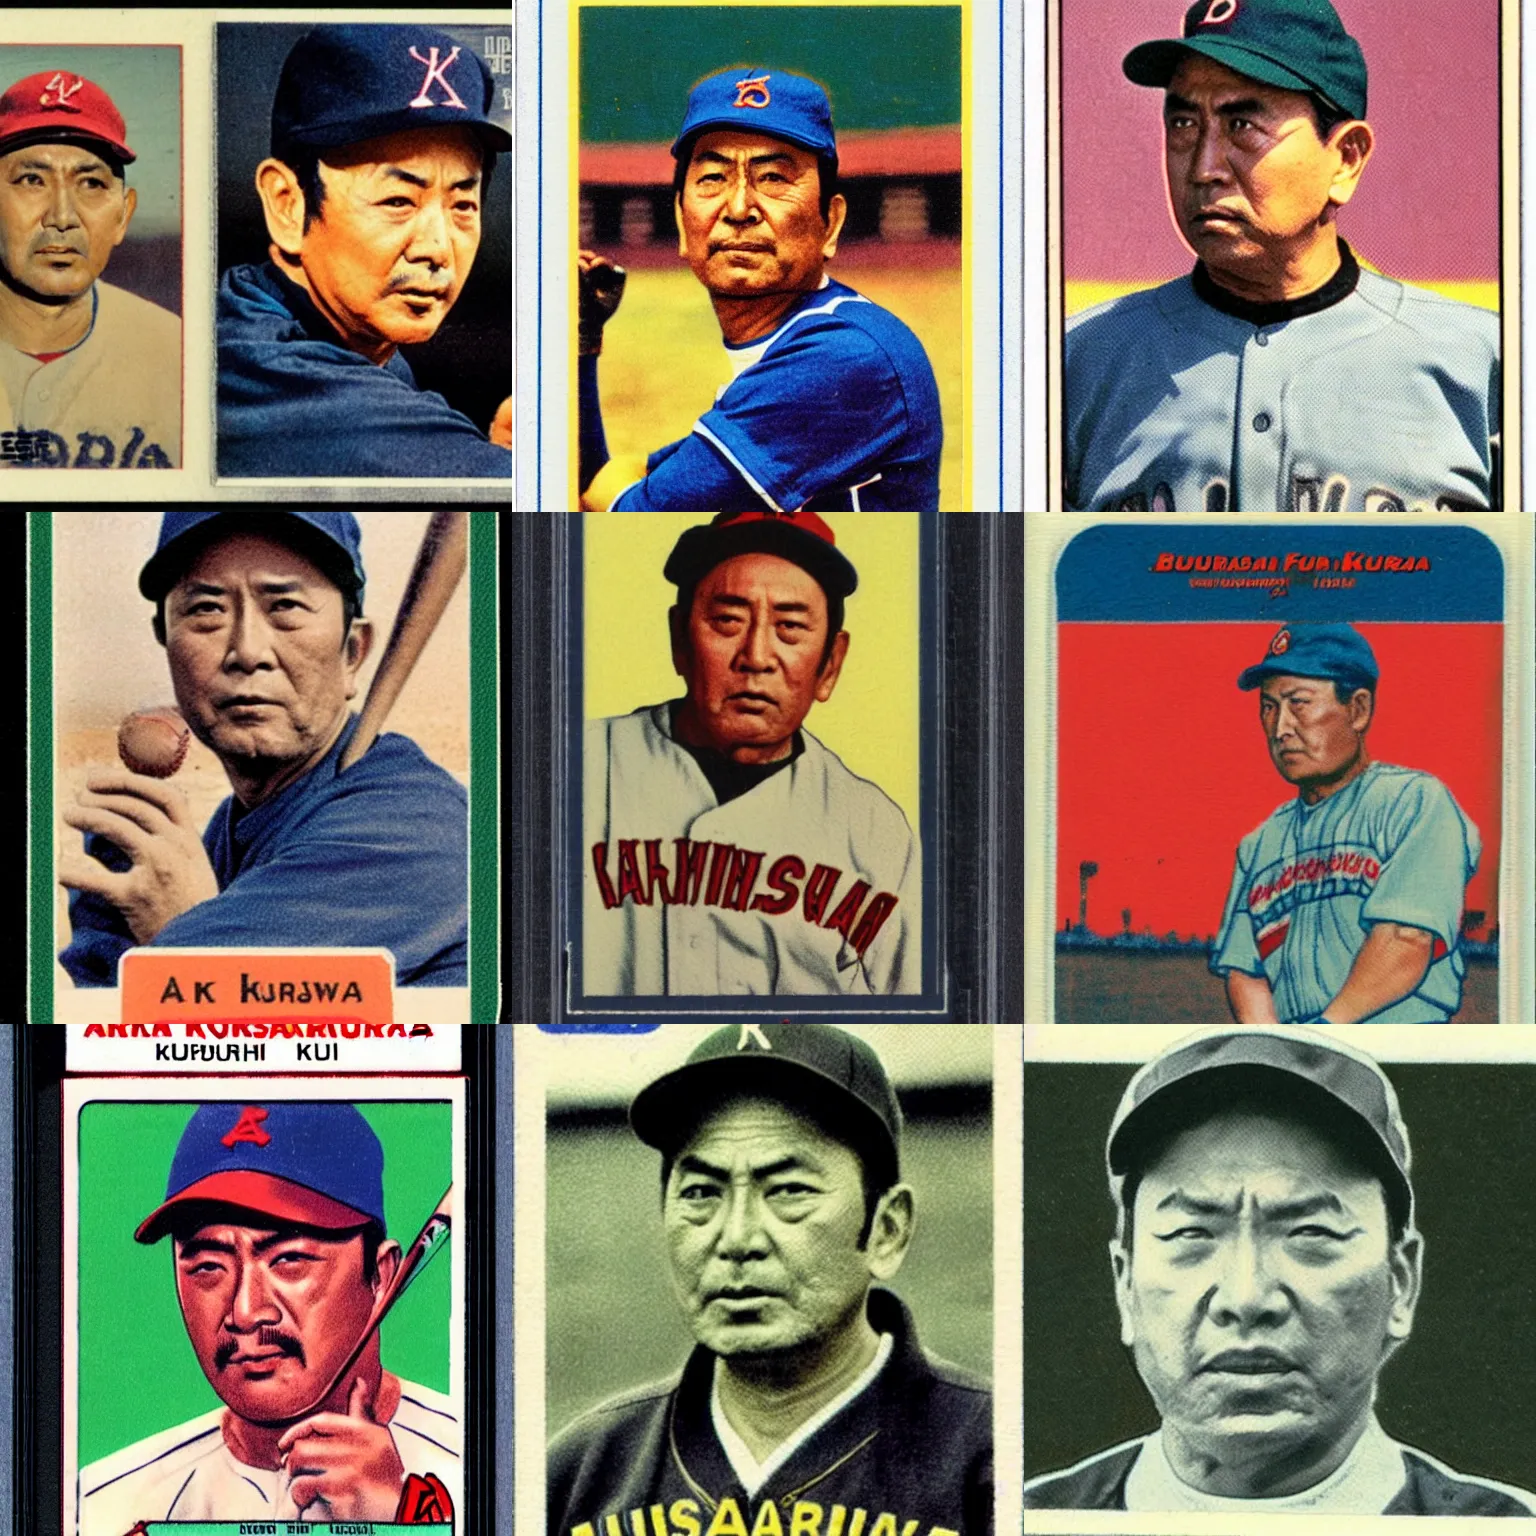 Prompt: a baseball card of akira kurosawa